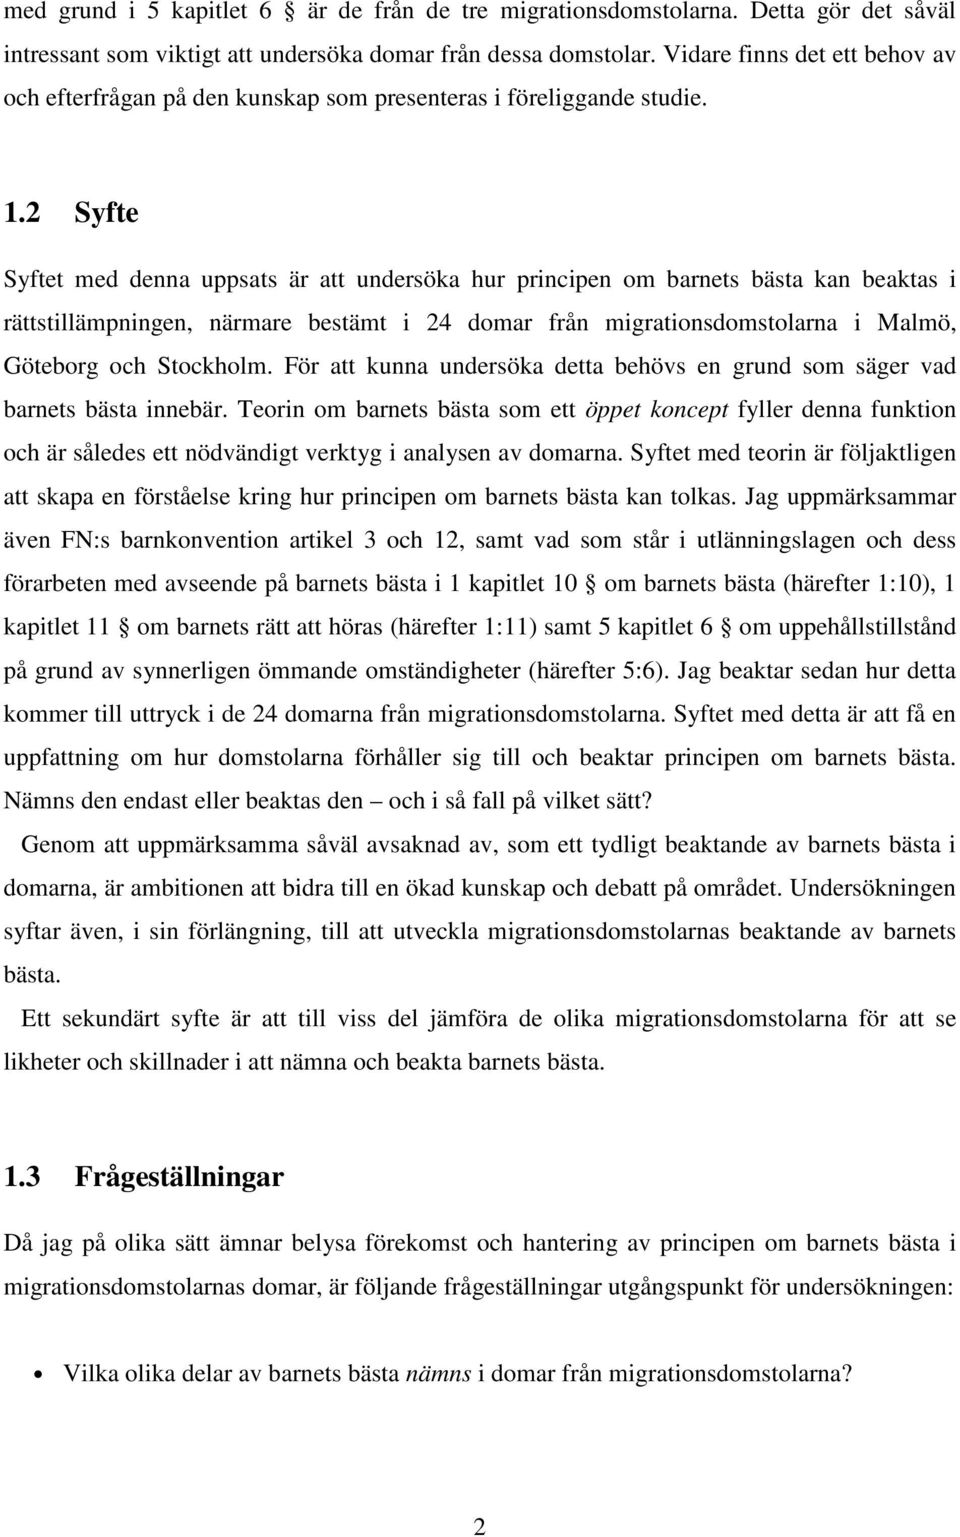 2 Syfte Syftet med denna uppsats är att undersöka hur principen om barnets bästa kan beaktas i rättstillämpningen, närmare bestämt i 24 domar från migrationsdomstolarna i Malmö, Göteborg och